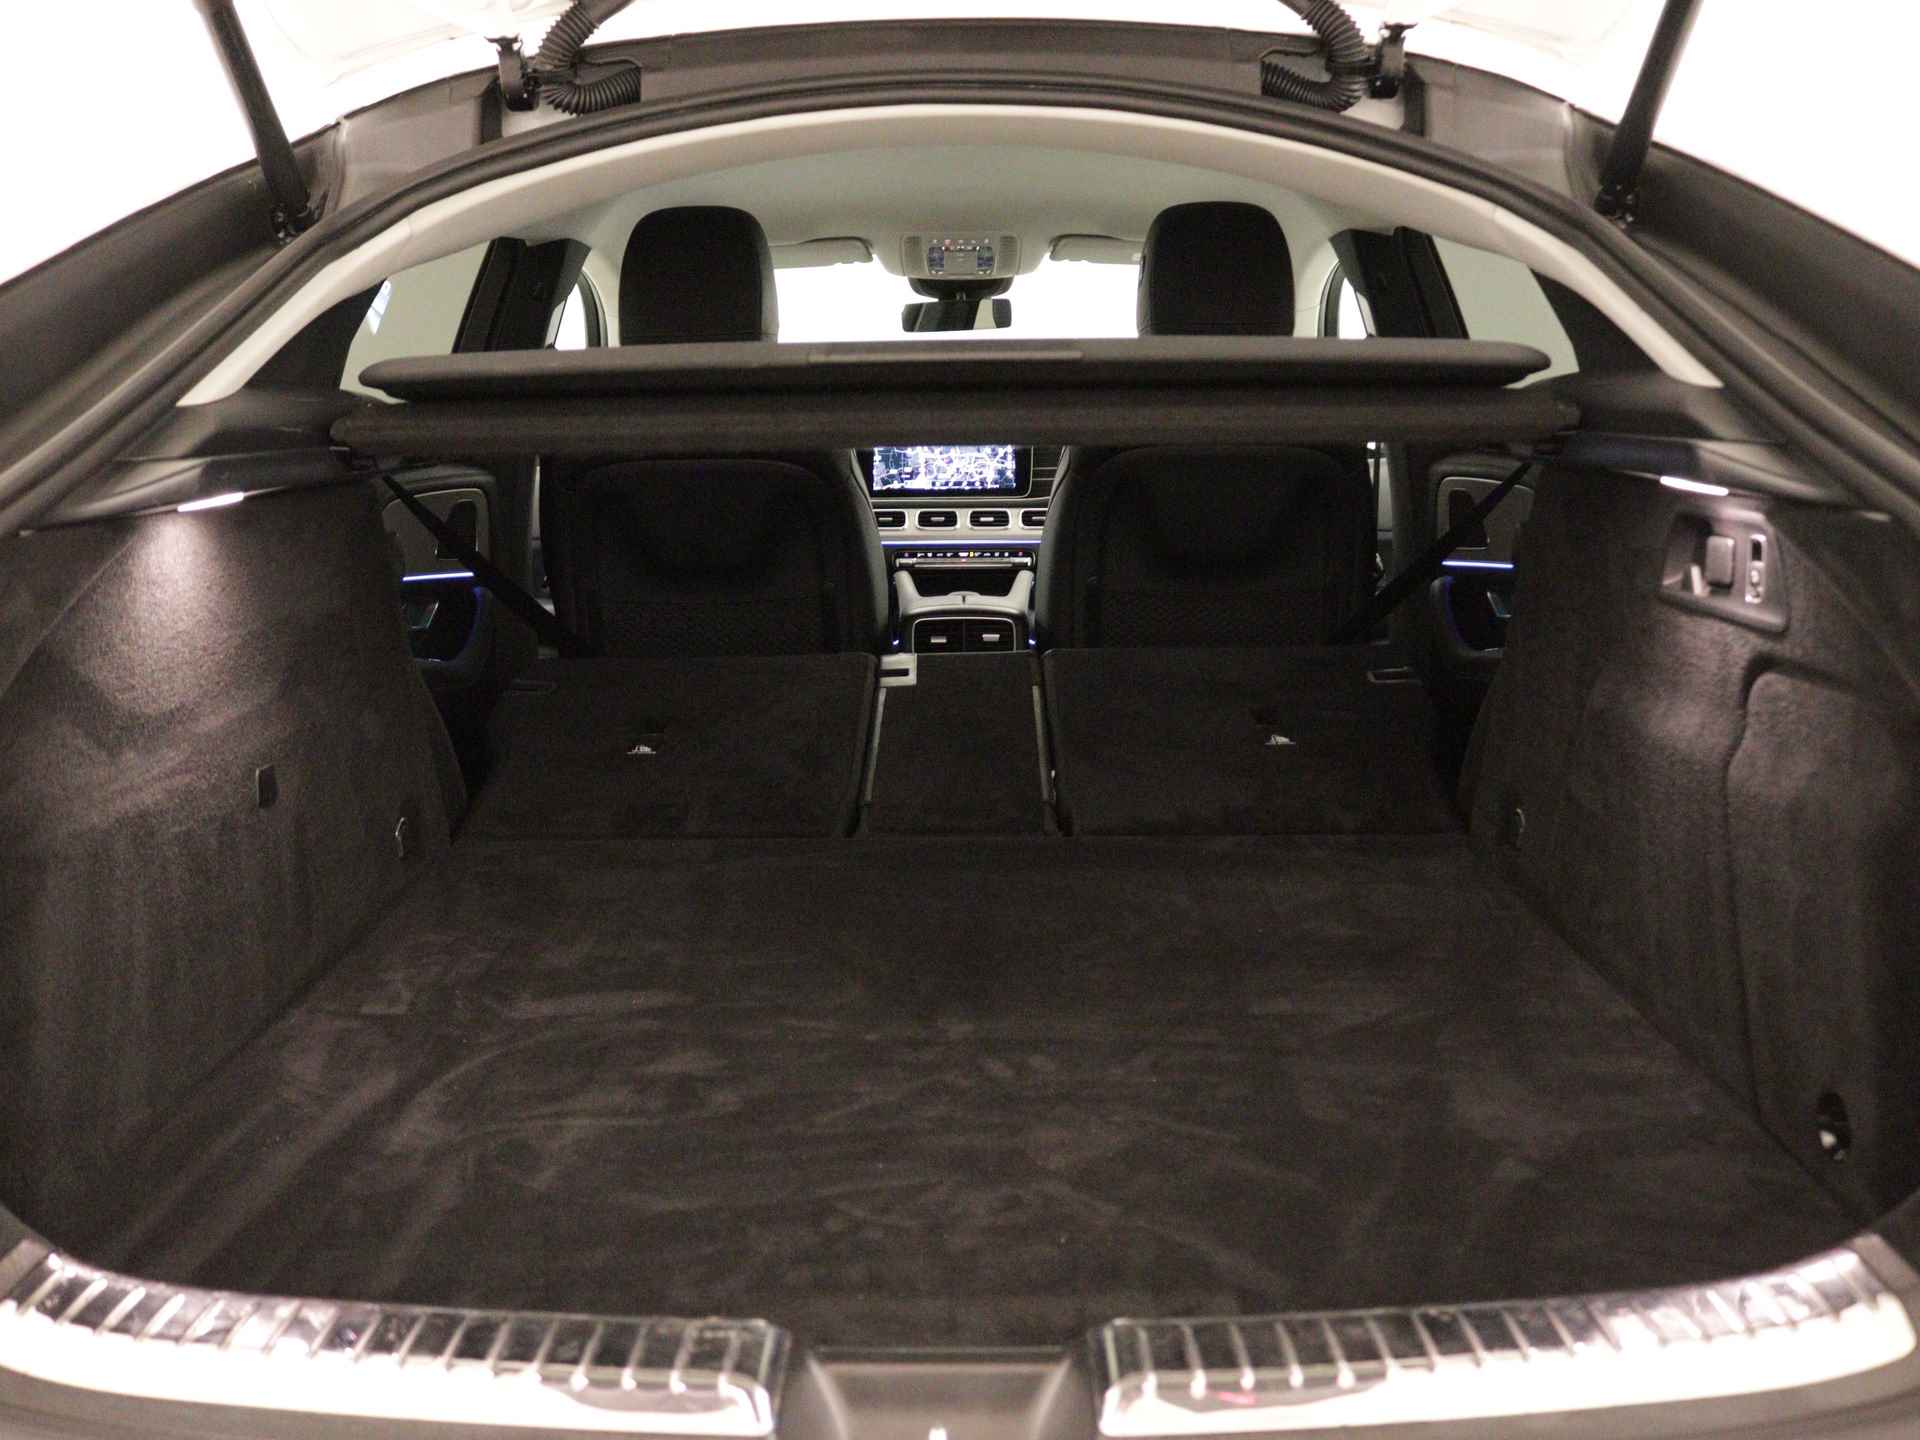 Mercedes-Benz GLE 350 e 4-MATIC AMG Nightpakket Limited 5 spaaks lichtmetalen velgen | Trekhaak | Airmatic | Treeplanken | Alarm klasse 3 |  Augmented Reality | sfeerverlichting | DAB | Parking support | inclusief 24 maanden MB Certified garantie voor europa - 40/45